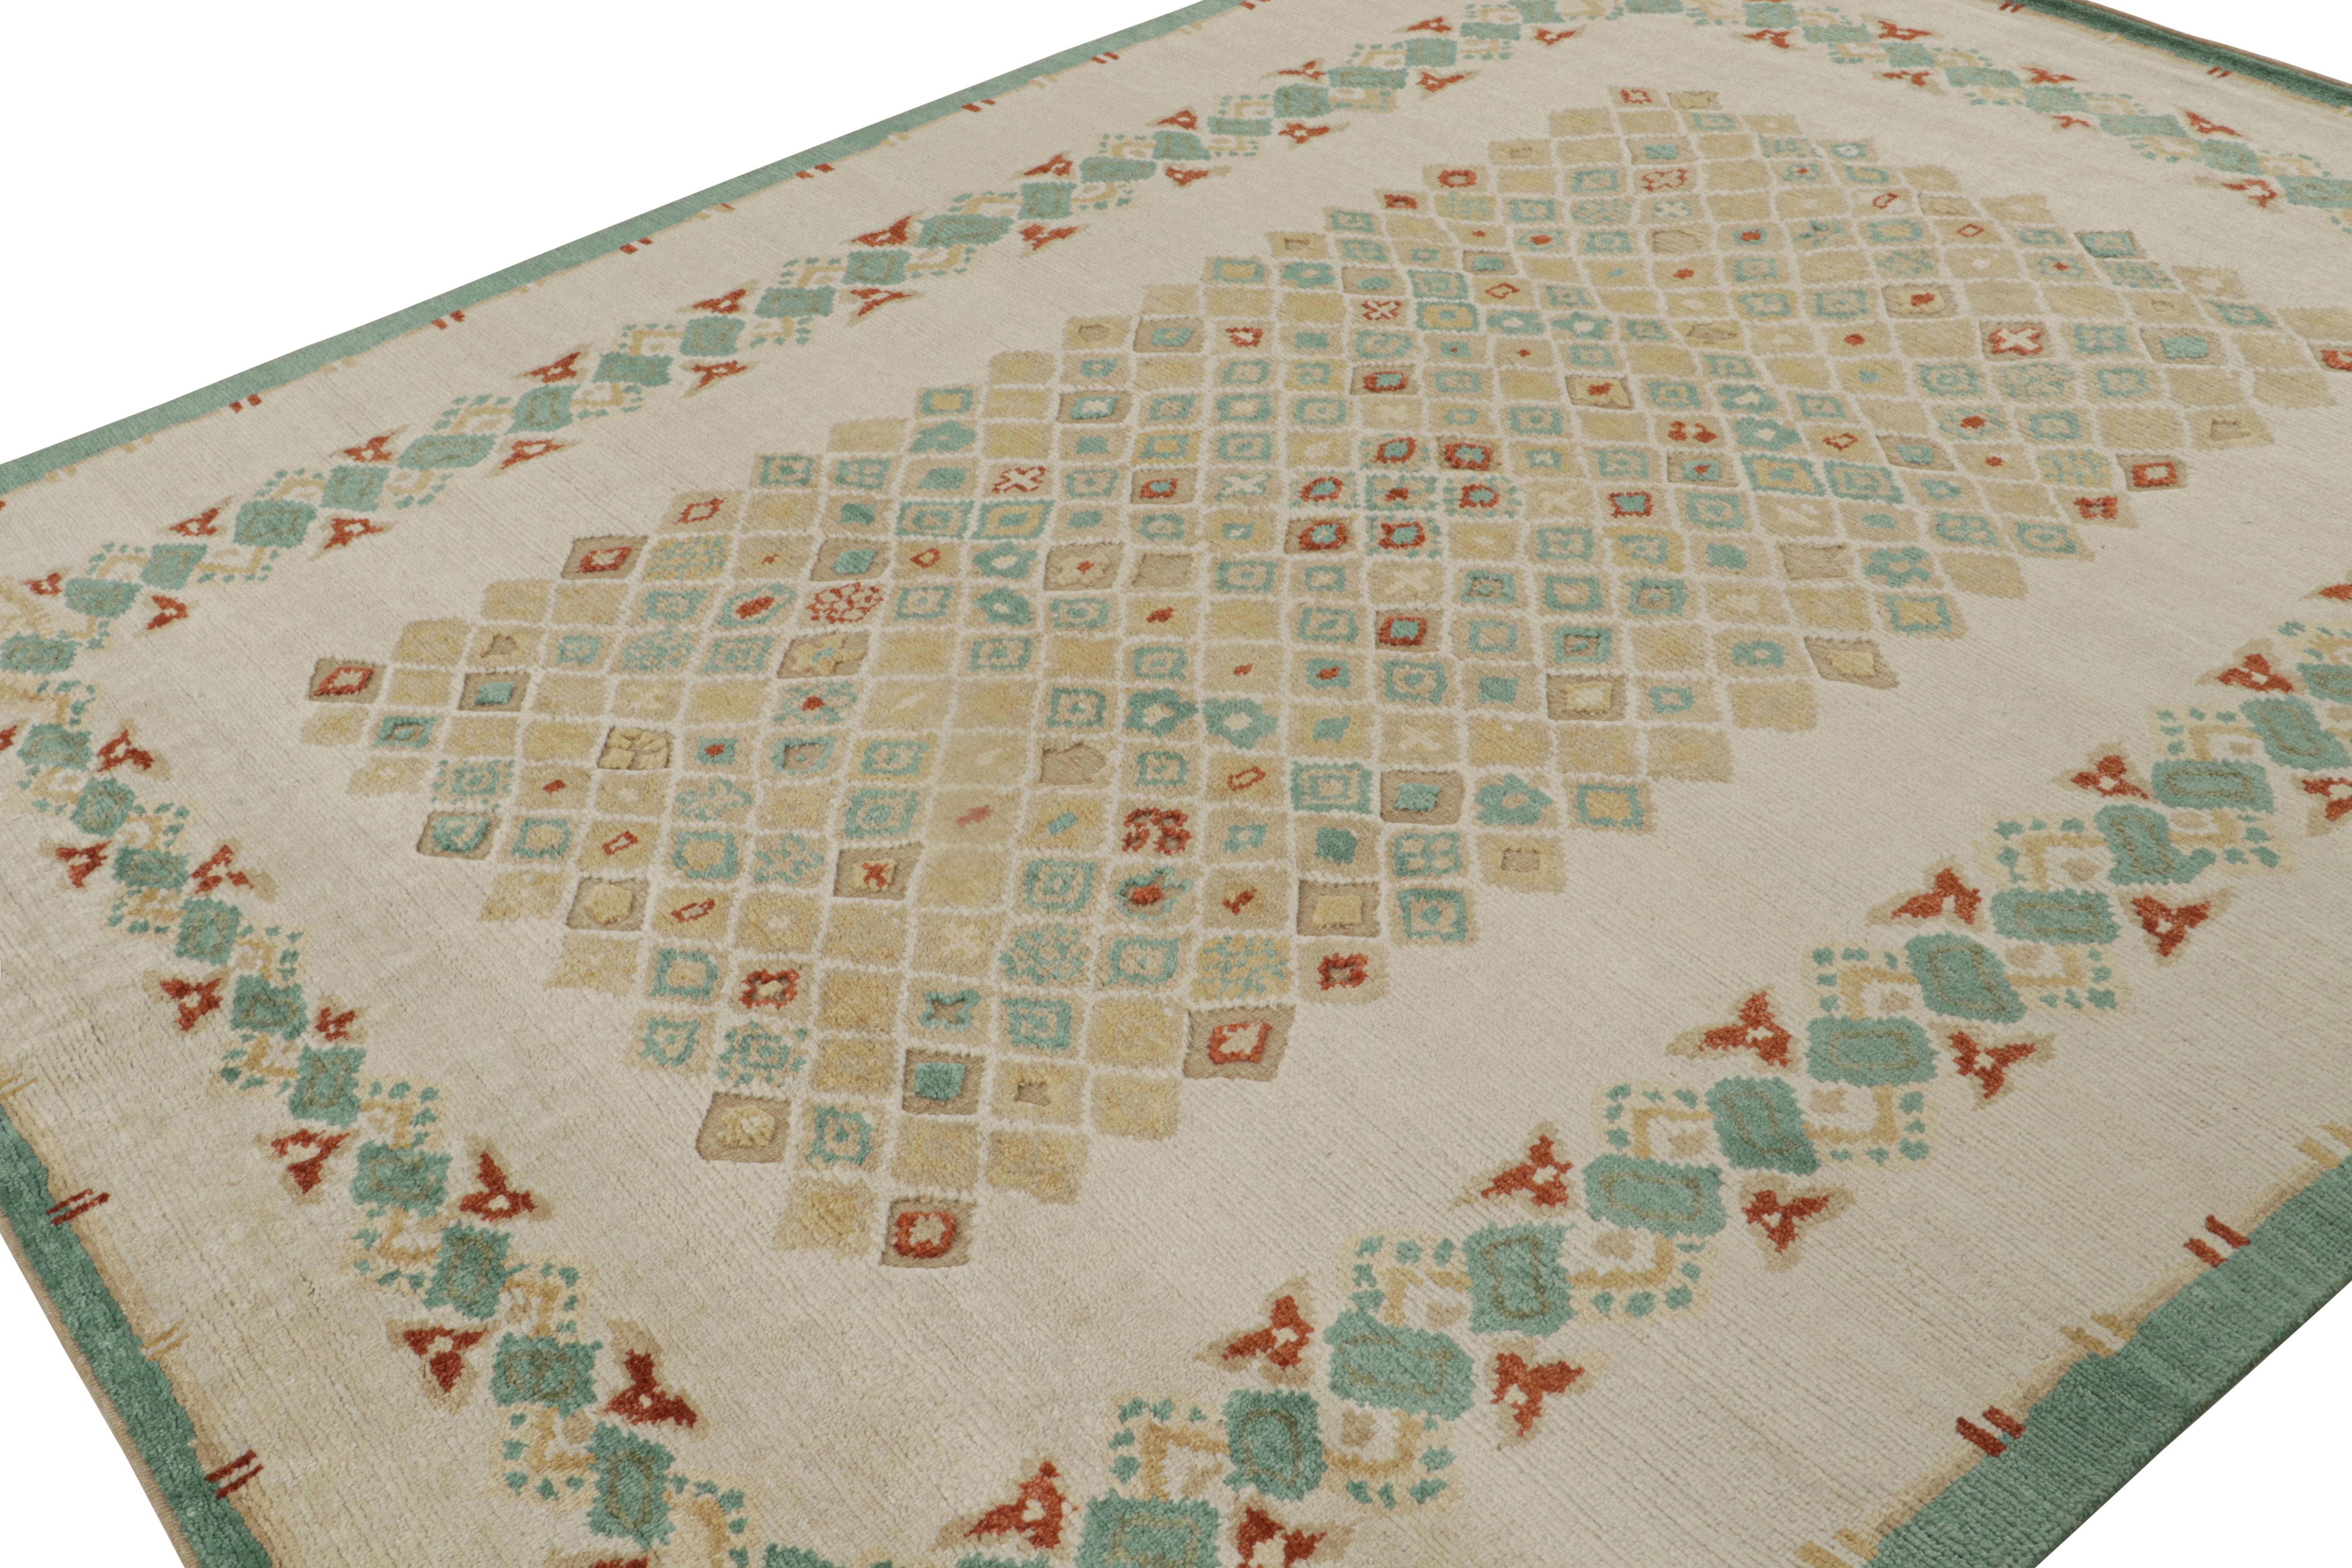 Noué à la main en laine, ce tapis moderne 8x10 fait partie de la collection French Art Deco Rug de Rug & Kilim, une réimagination contemporaine de pièces d'époque de la France des années 1920.

Sur le design : 

Le tapis présente un champ ouvert et